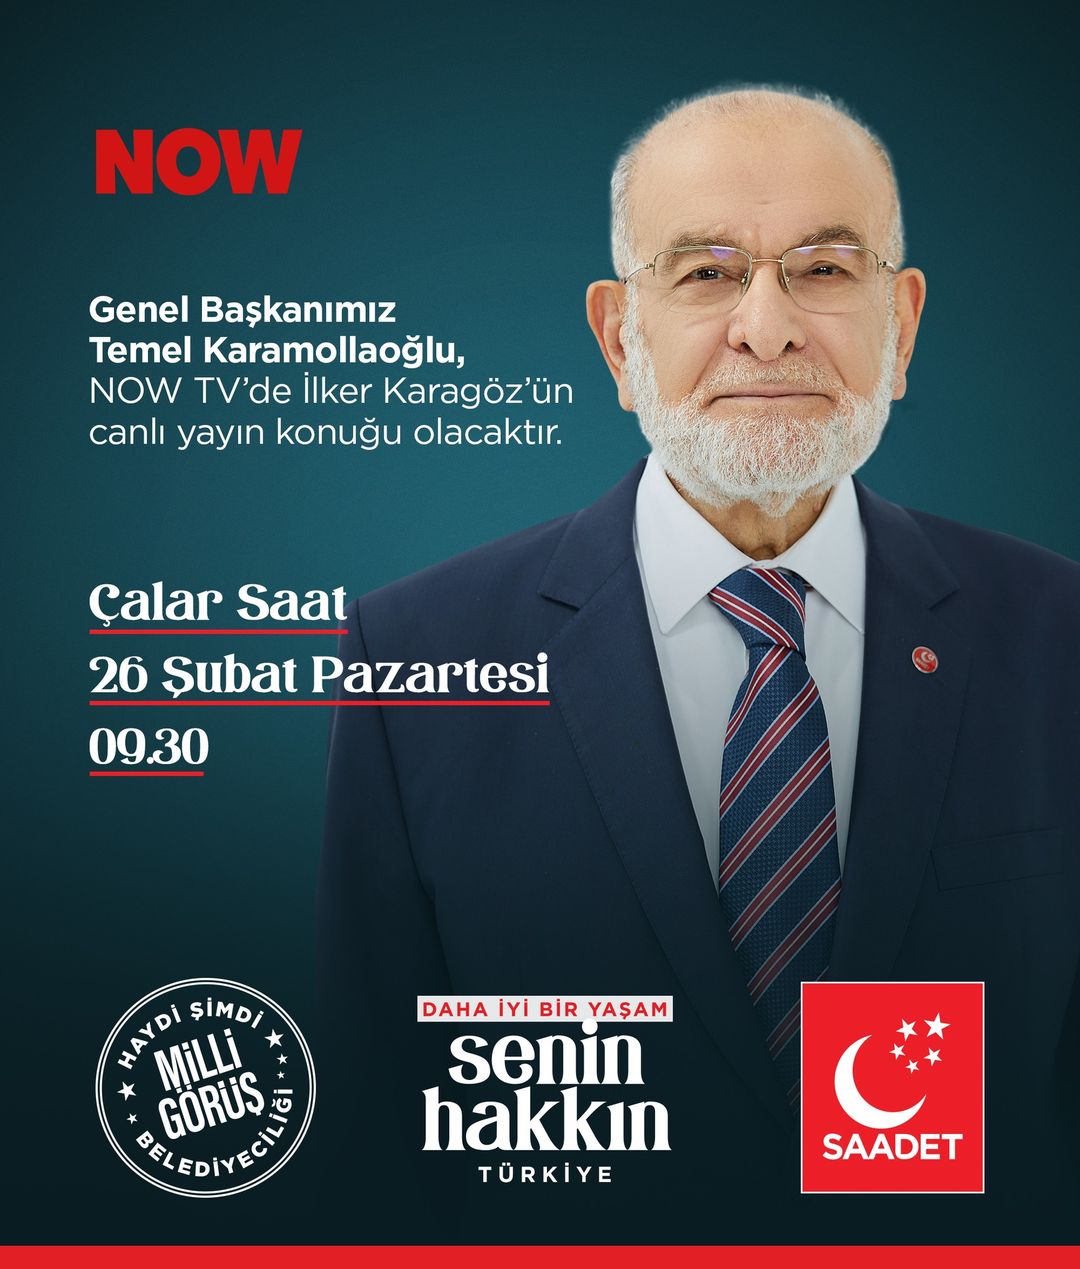 Saadet Partisi Genel Başkanı Temel Karamollaoğlu, NOW TV'de 